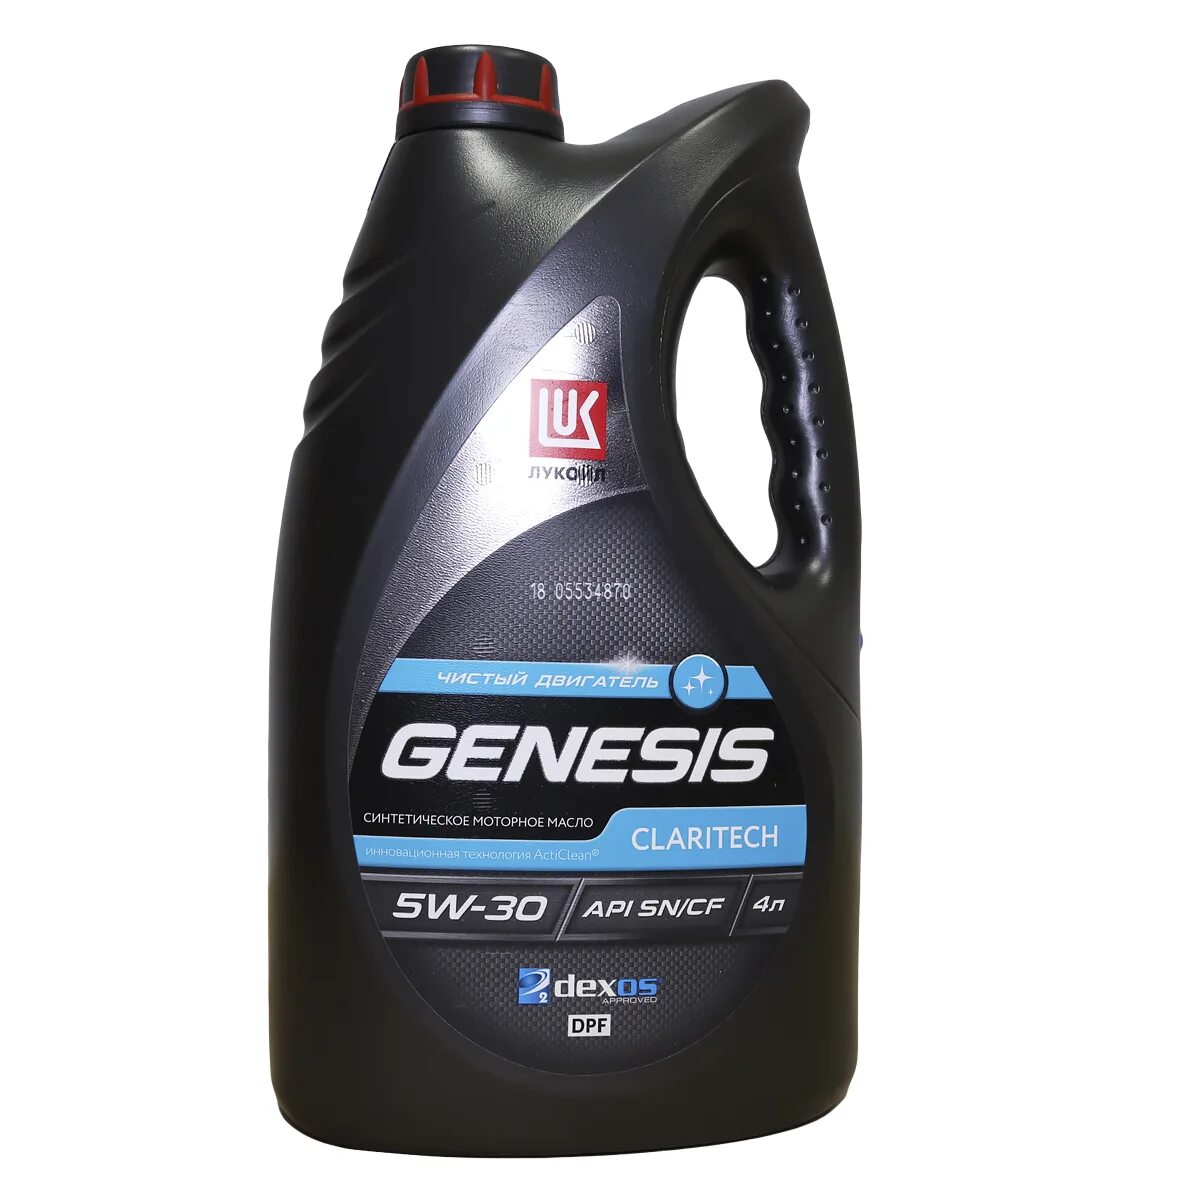 Lukoil Genesis 5w30. Lukoil Genesis Claritech 5w-30. Genesis Armortech 5w-30. Lukoil Genesis 5w30 Genesis. Масло лукойл 5в30